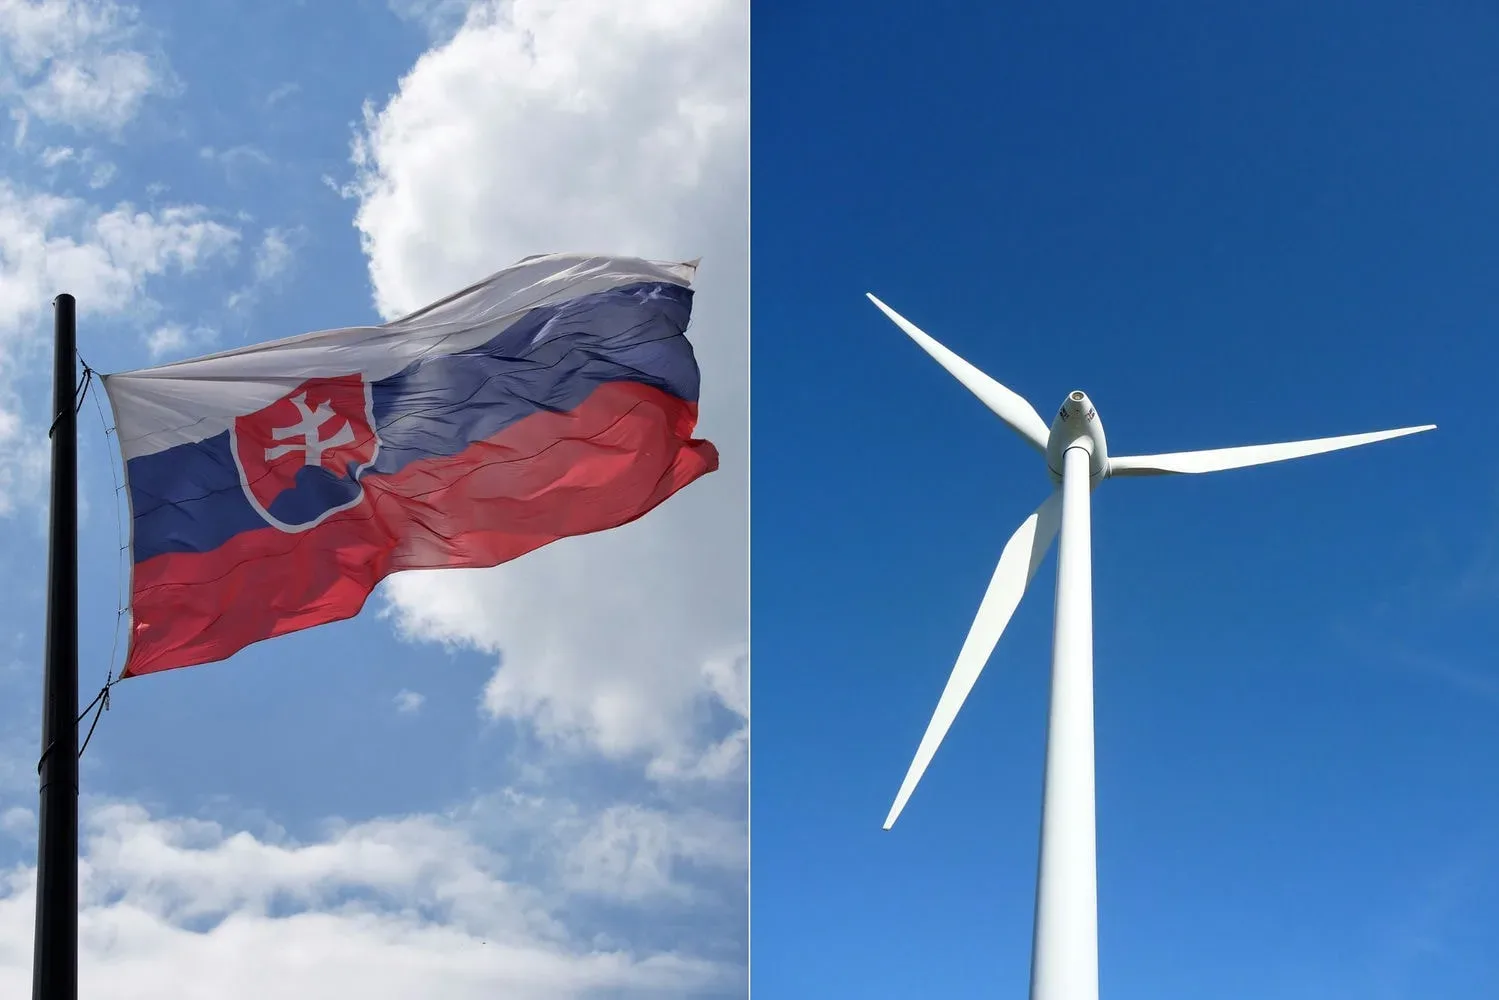 slovensko veterna turbina jpg webp